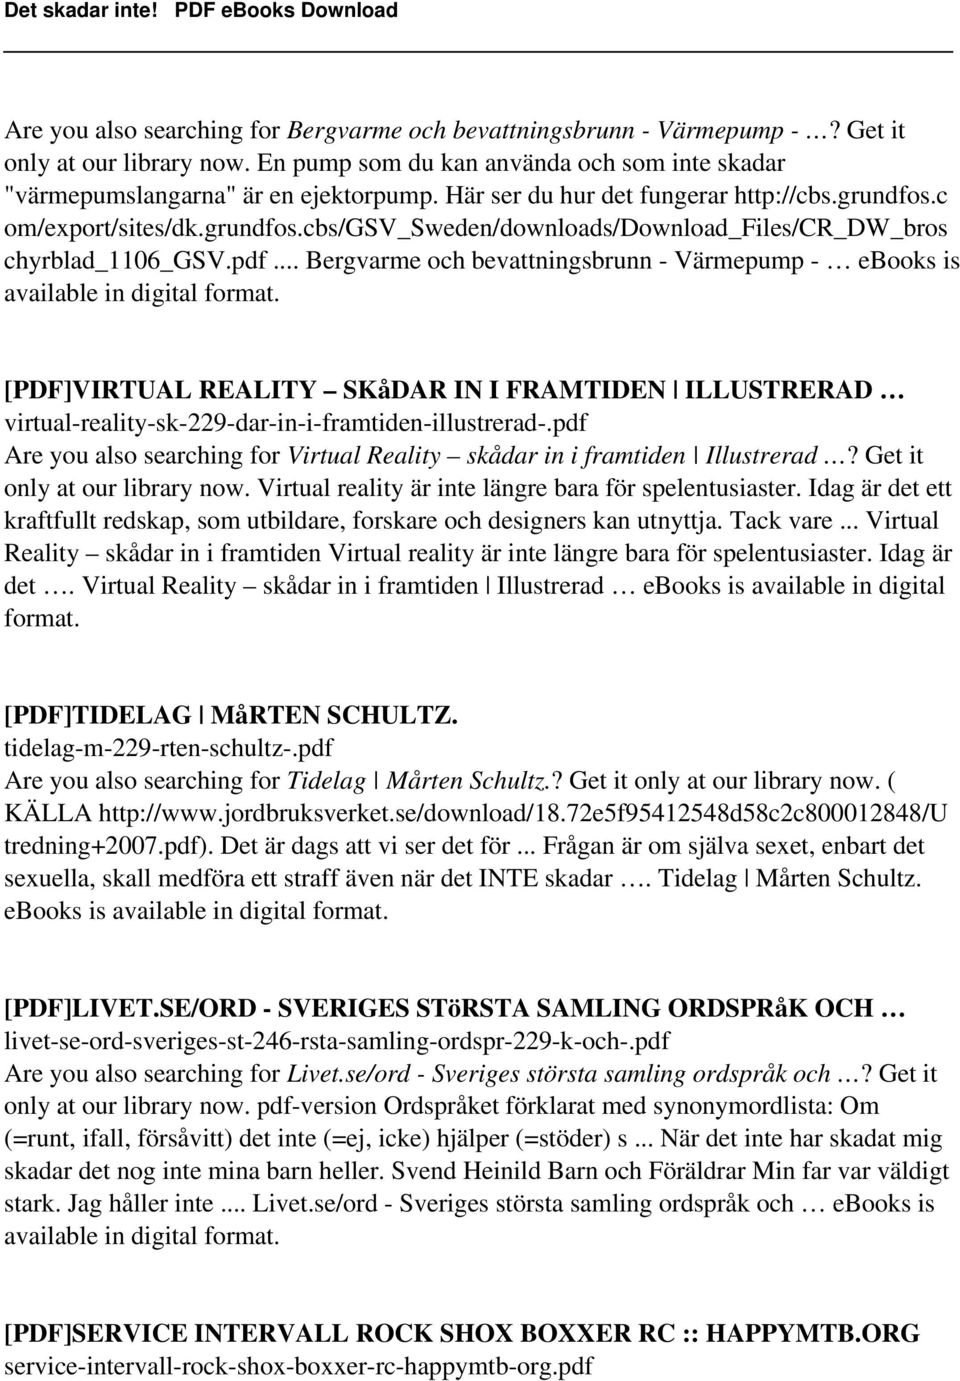 .. Bergvarme och bevattningsbrunn - Värmepump - ebooks is [PDF]VIRTUAL REALITY SKåDAR IN I FRAMTIDEN ILLUSTRERAD virtual-reality-sk-229-dar-in-i-framtiden-illustrerad-.